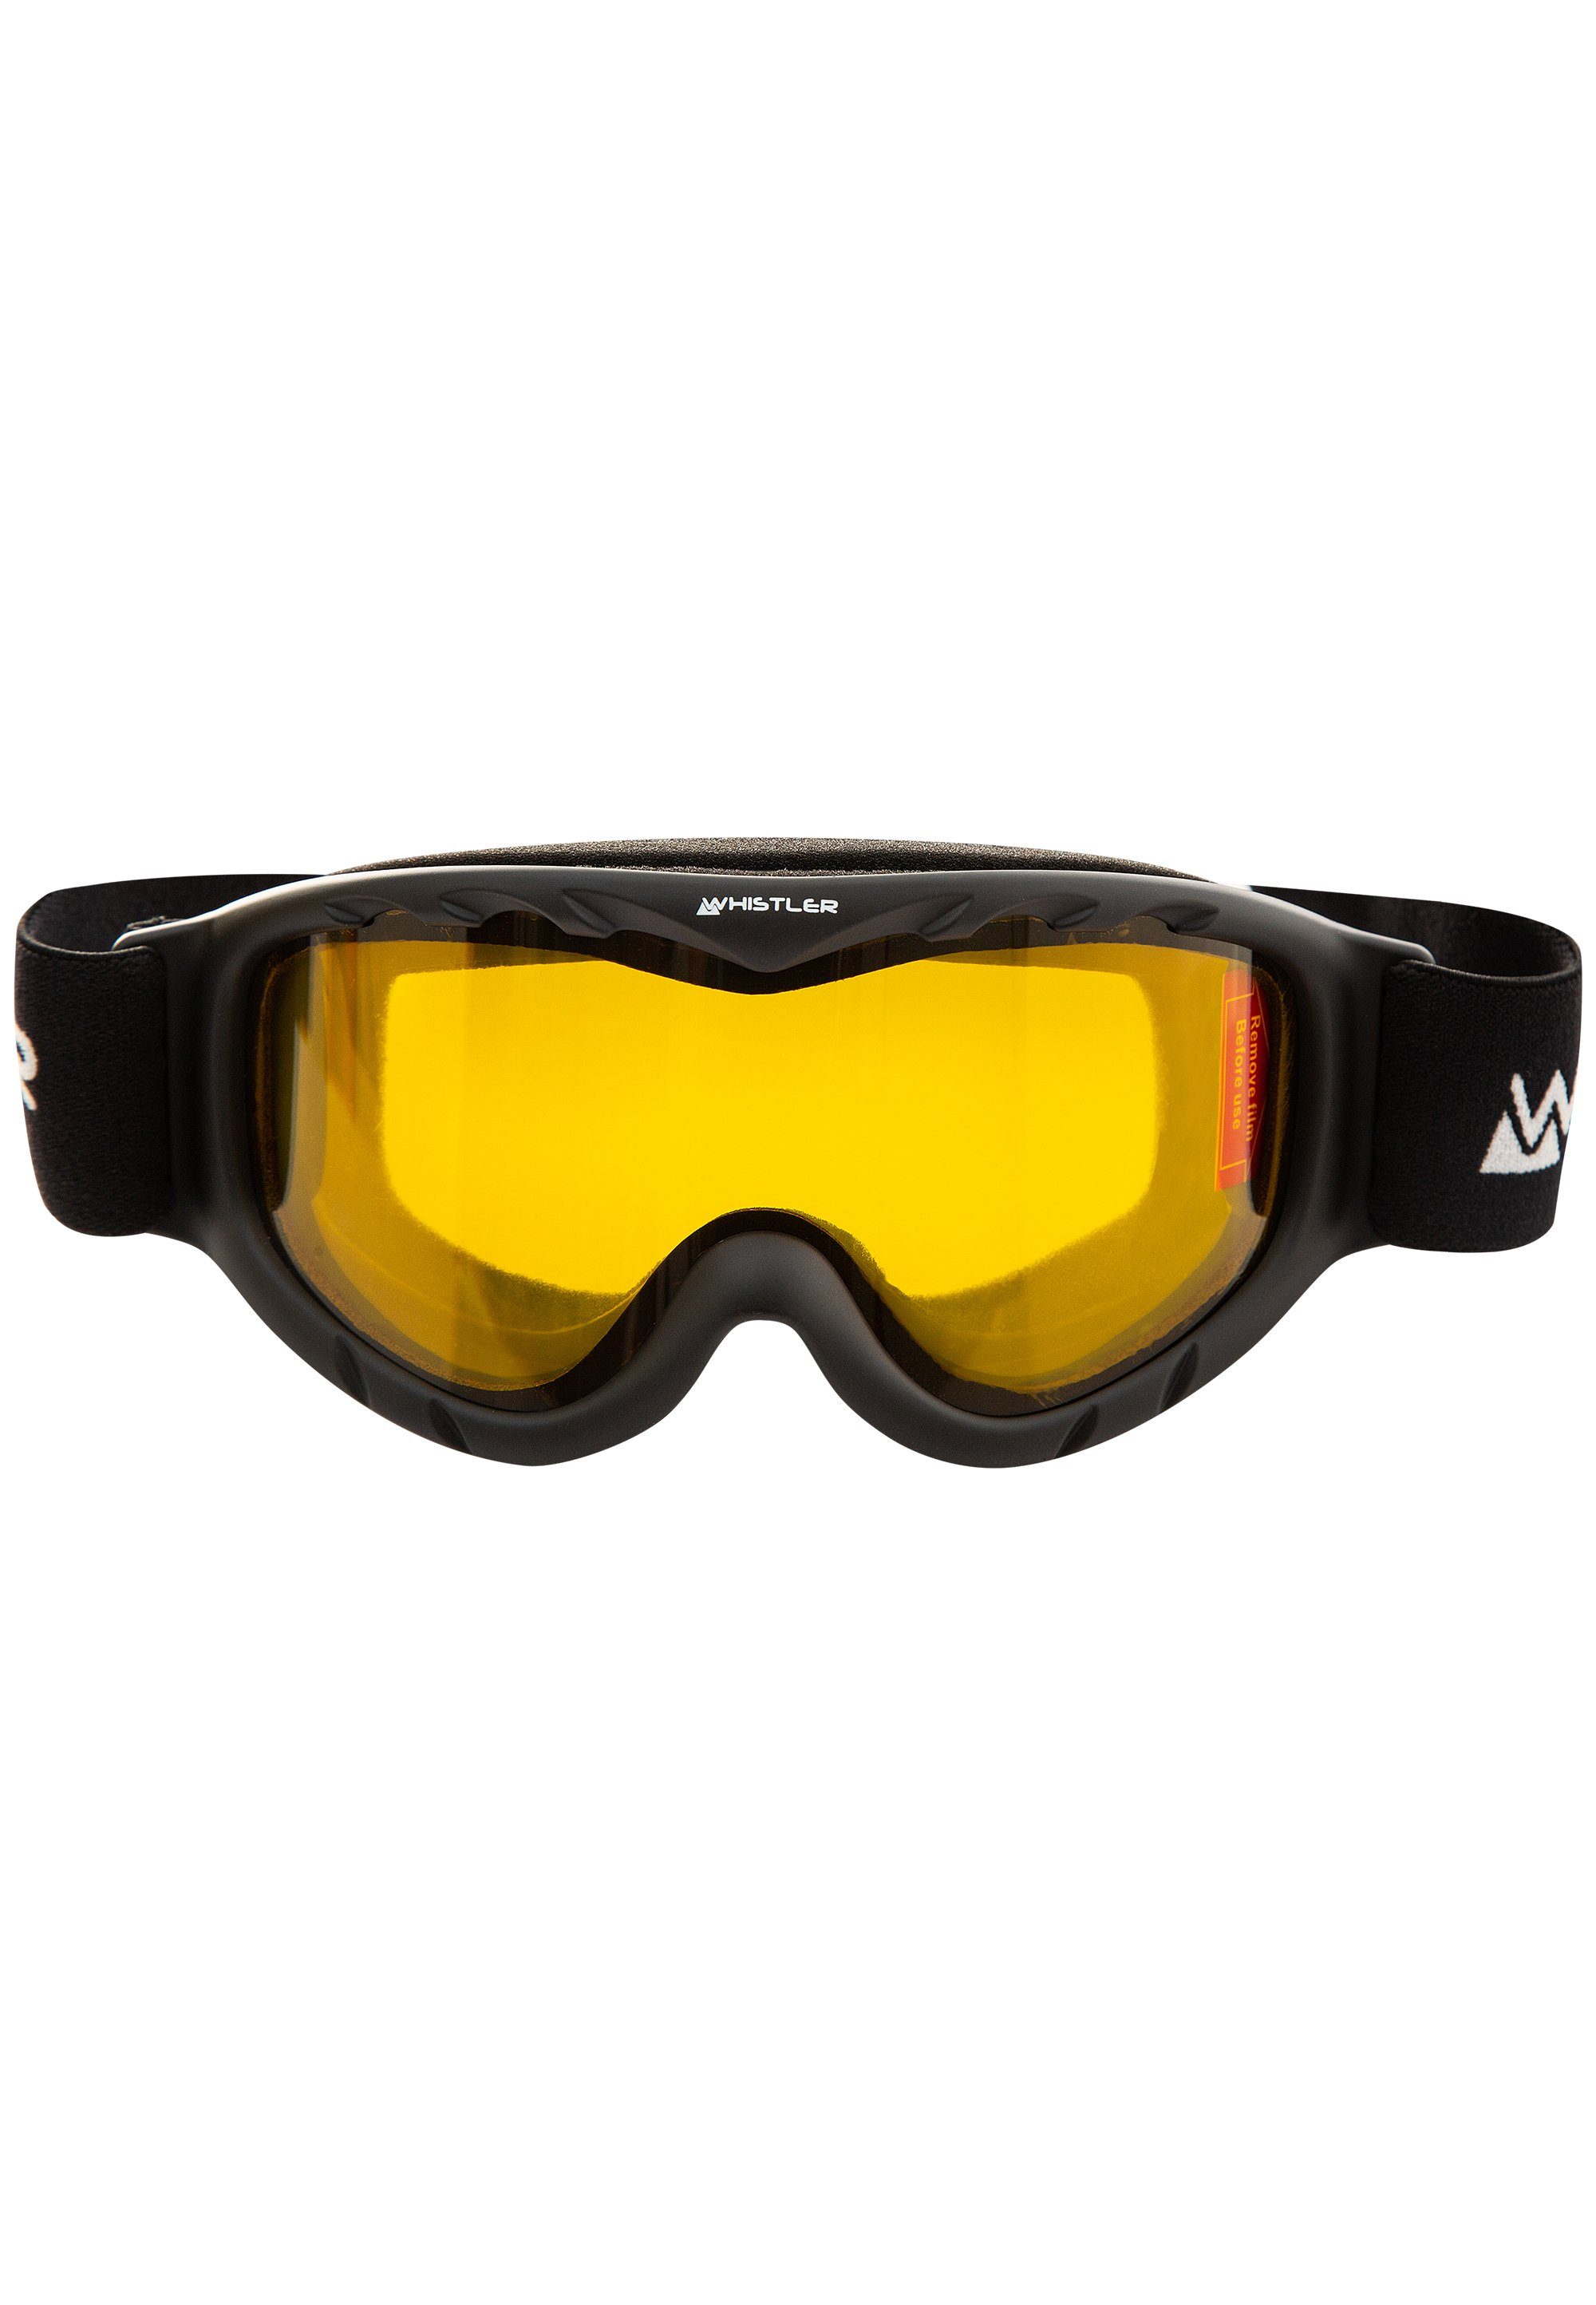 Super günstiger Neuartikel WHISTLER Skibrille WS300 Jr. Anti-Fog-Beschichtung mit schwarz Ski Goggle